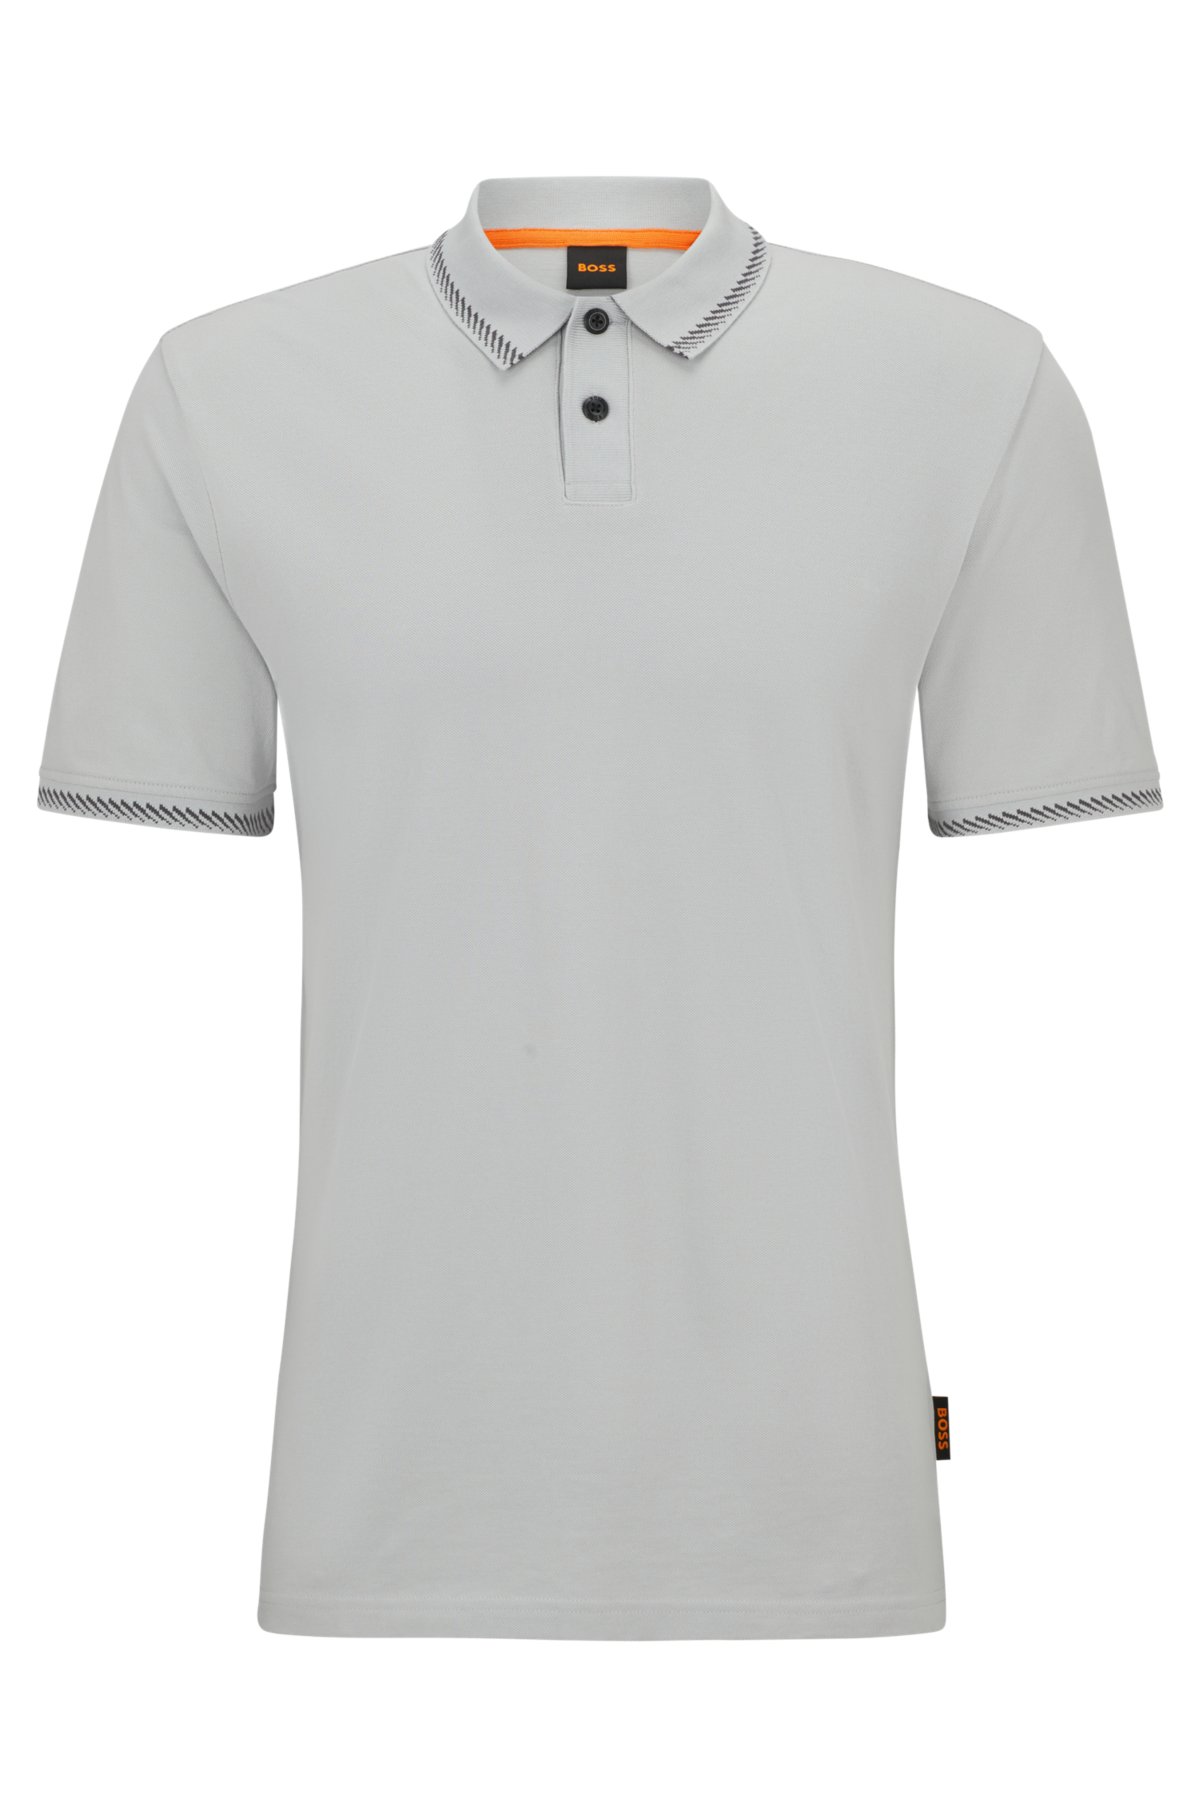 - Cotton-piqué polo shirt with contrast details